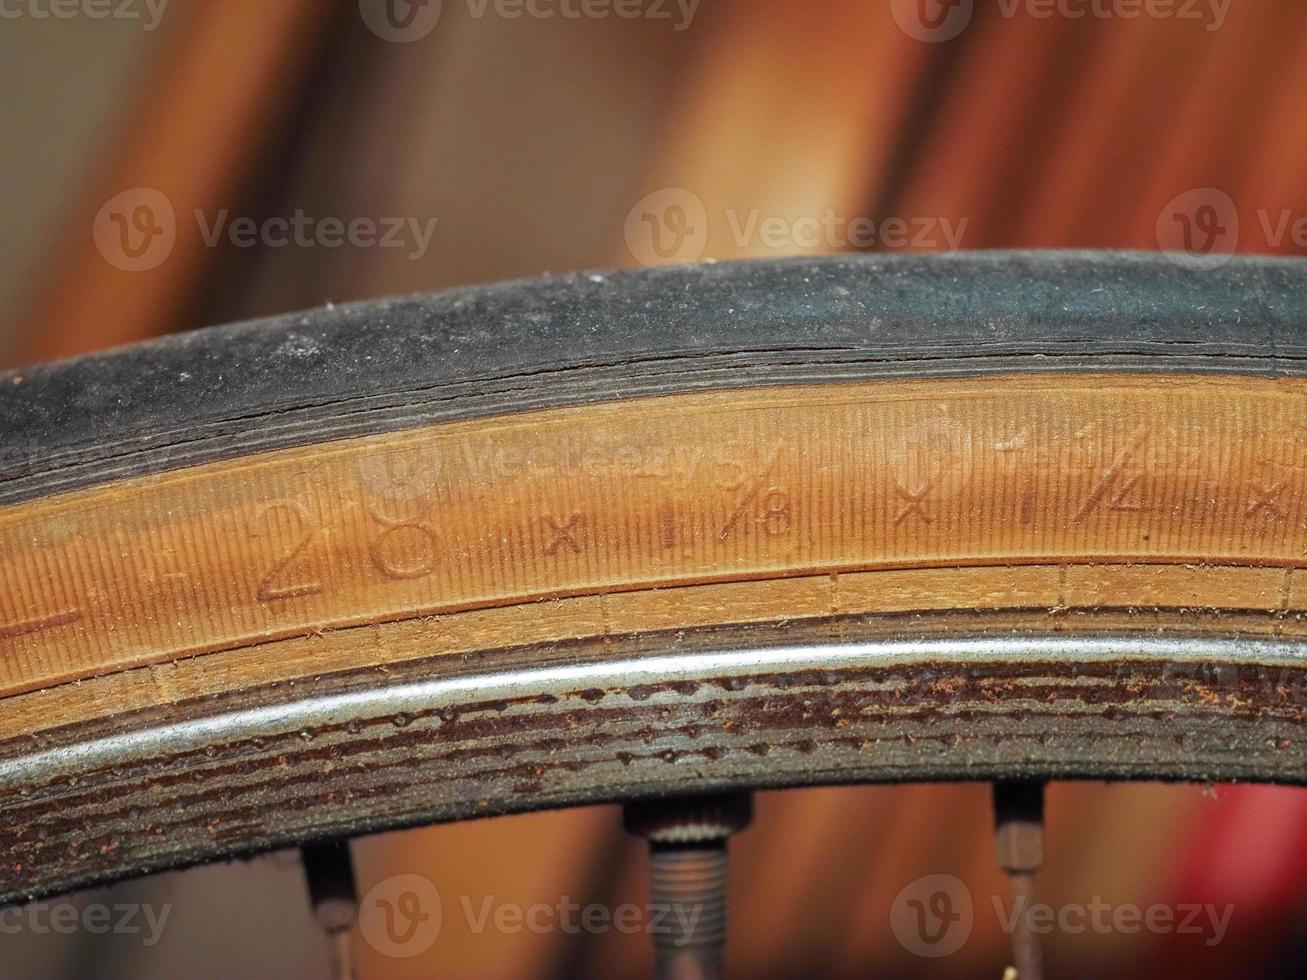 marcas de tamaño en el neumático de la bicicleta foto